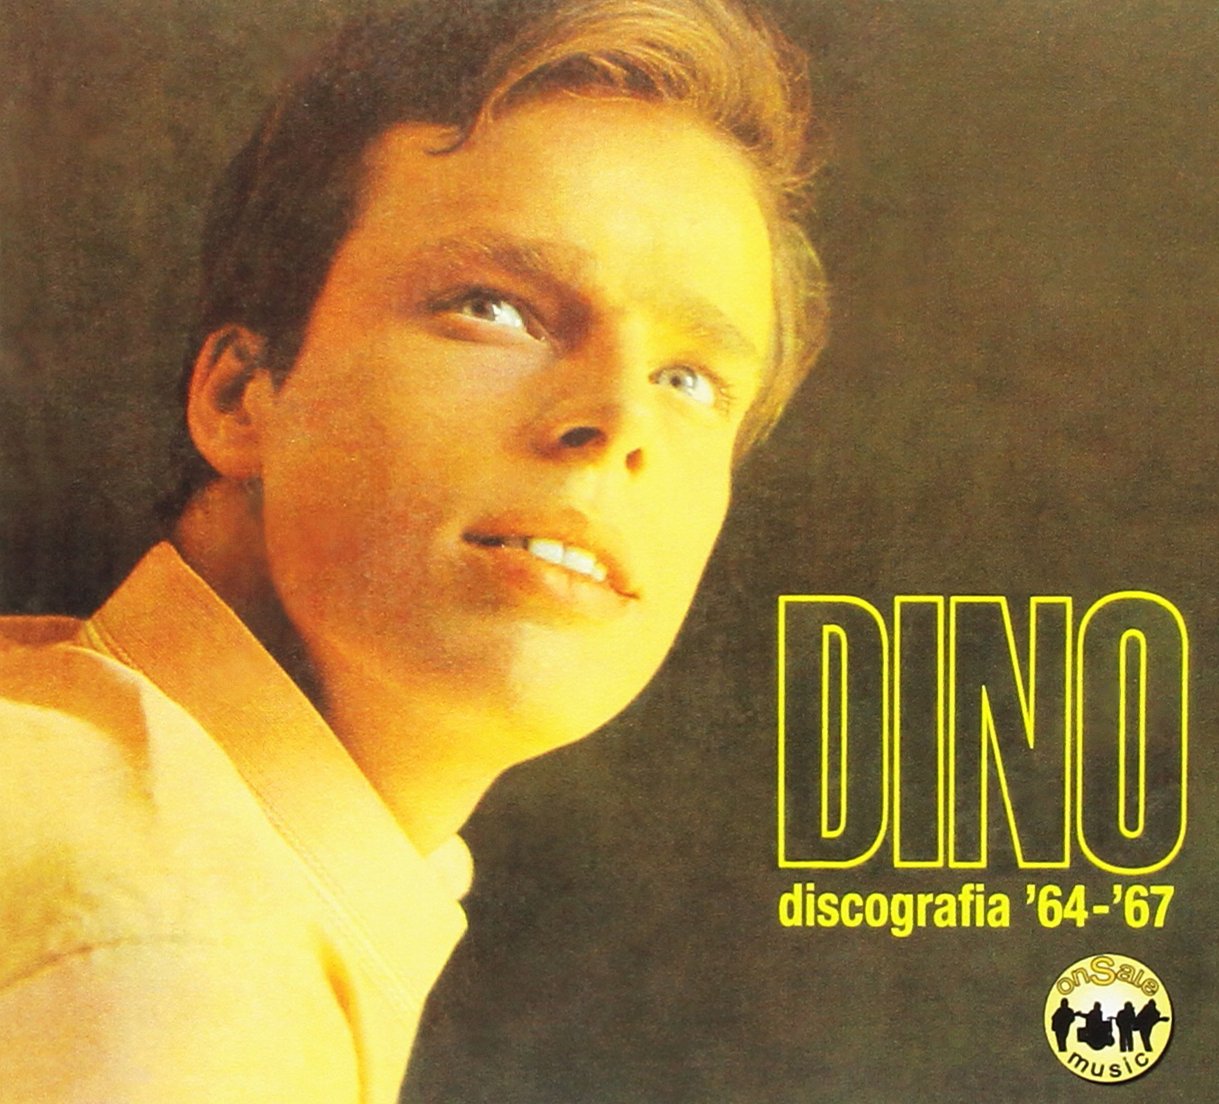 Dino - Discografia '64-'67 (1 CD)